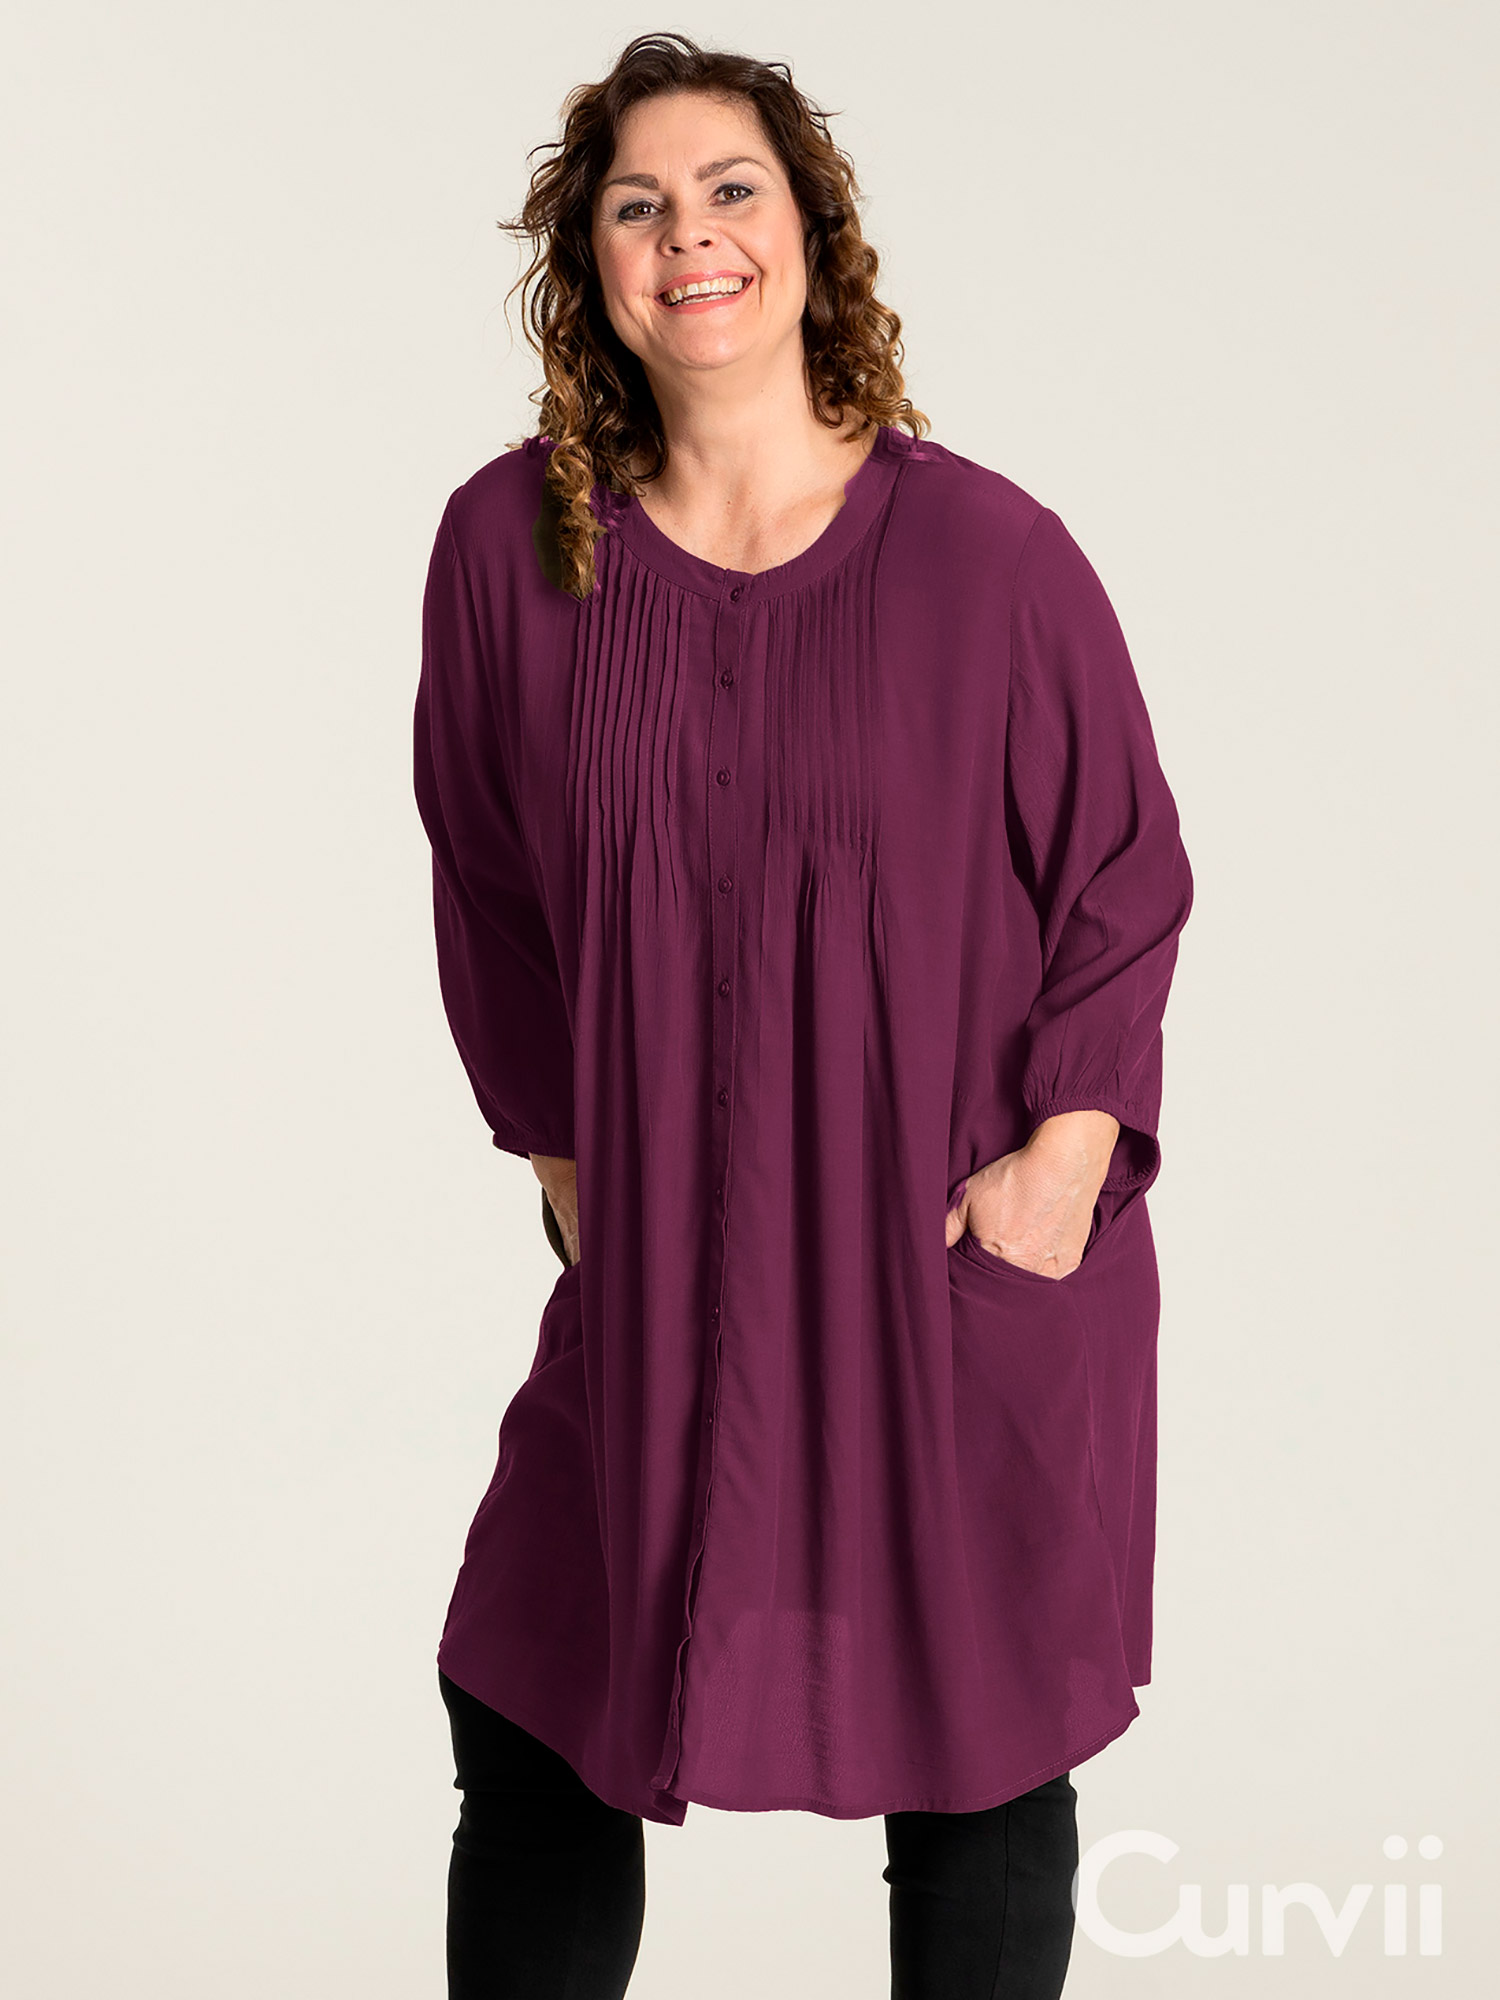 JOHANNE - Flot skjorte tunika i mørk lilla med lommer fra Gozzip